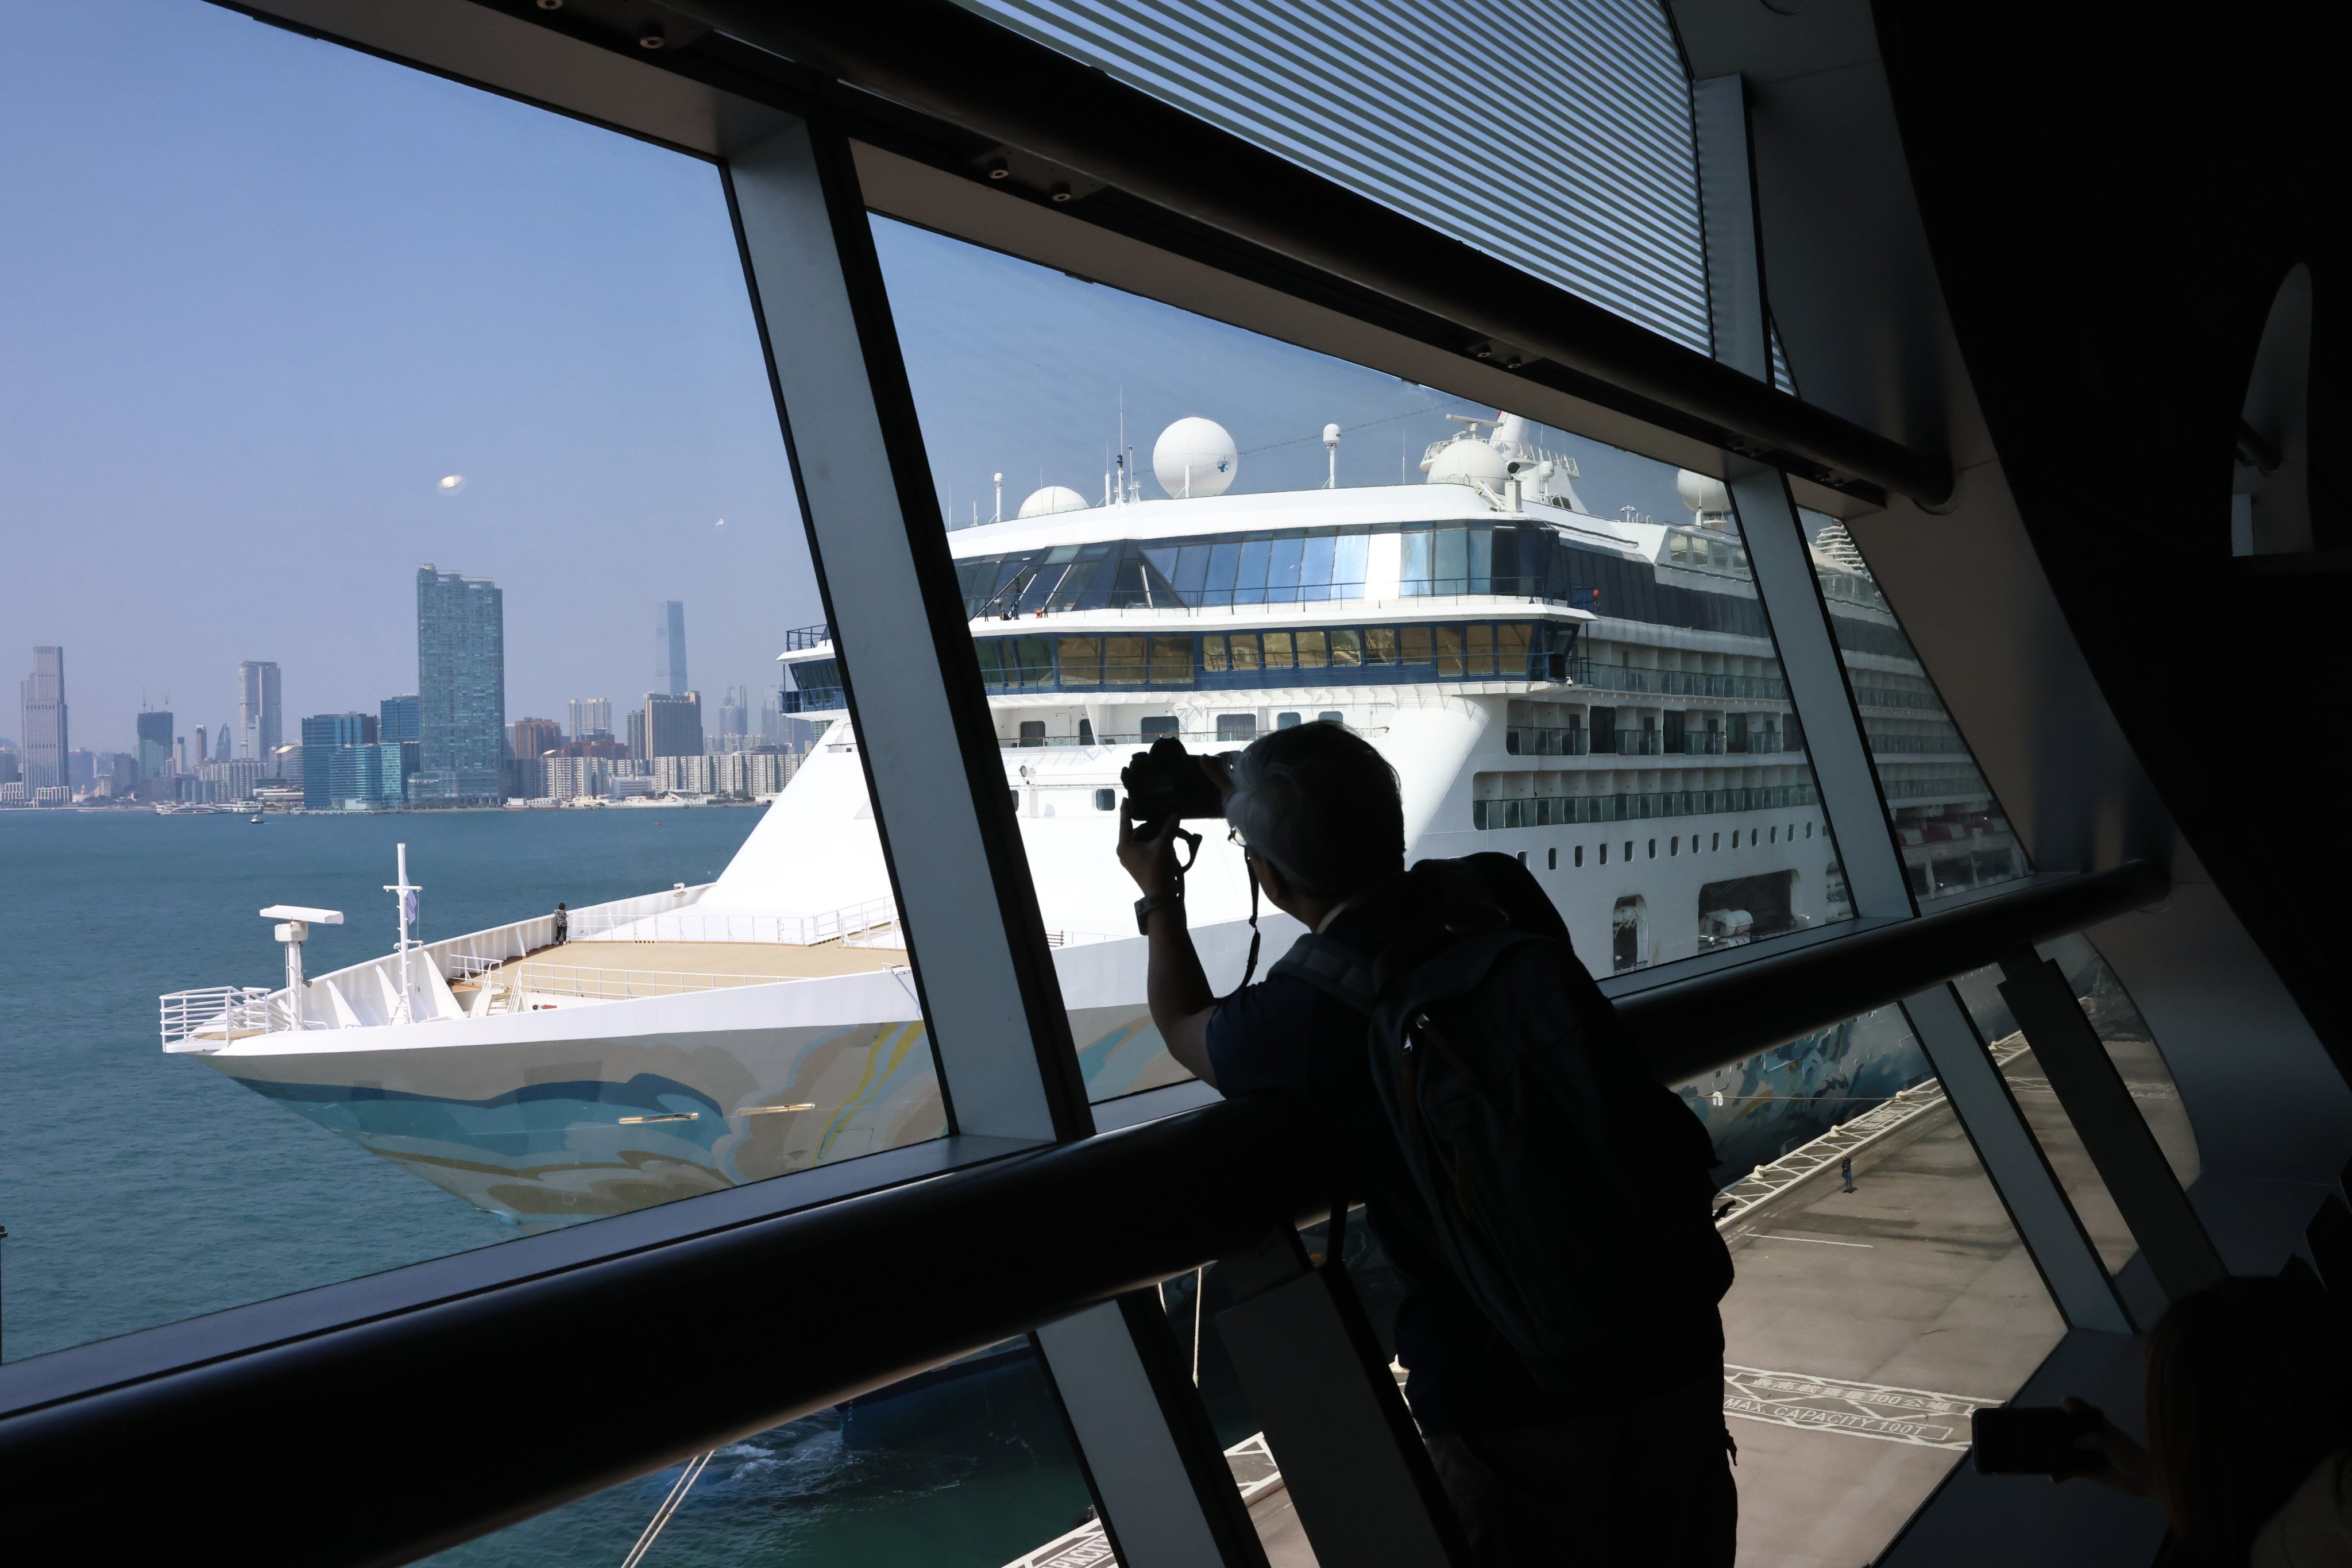 The inaugural sailing of Resorts World One at Hong Kong’s Kai Tak Cruise Terminal. Photo: SCMP / K. Y. Cheng